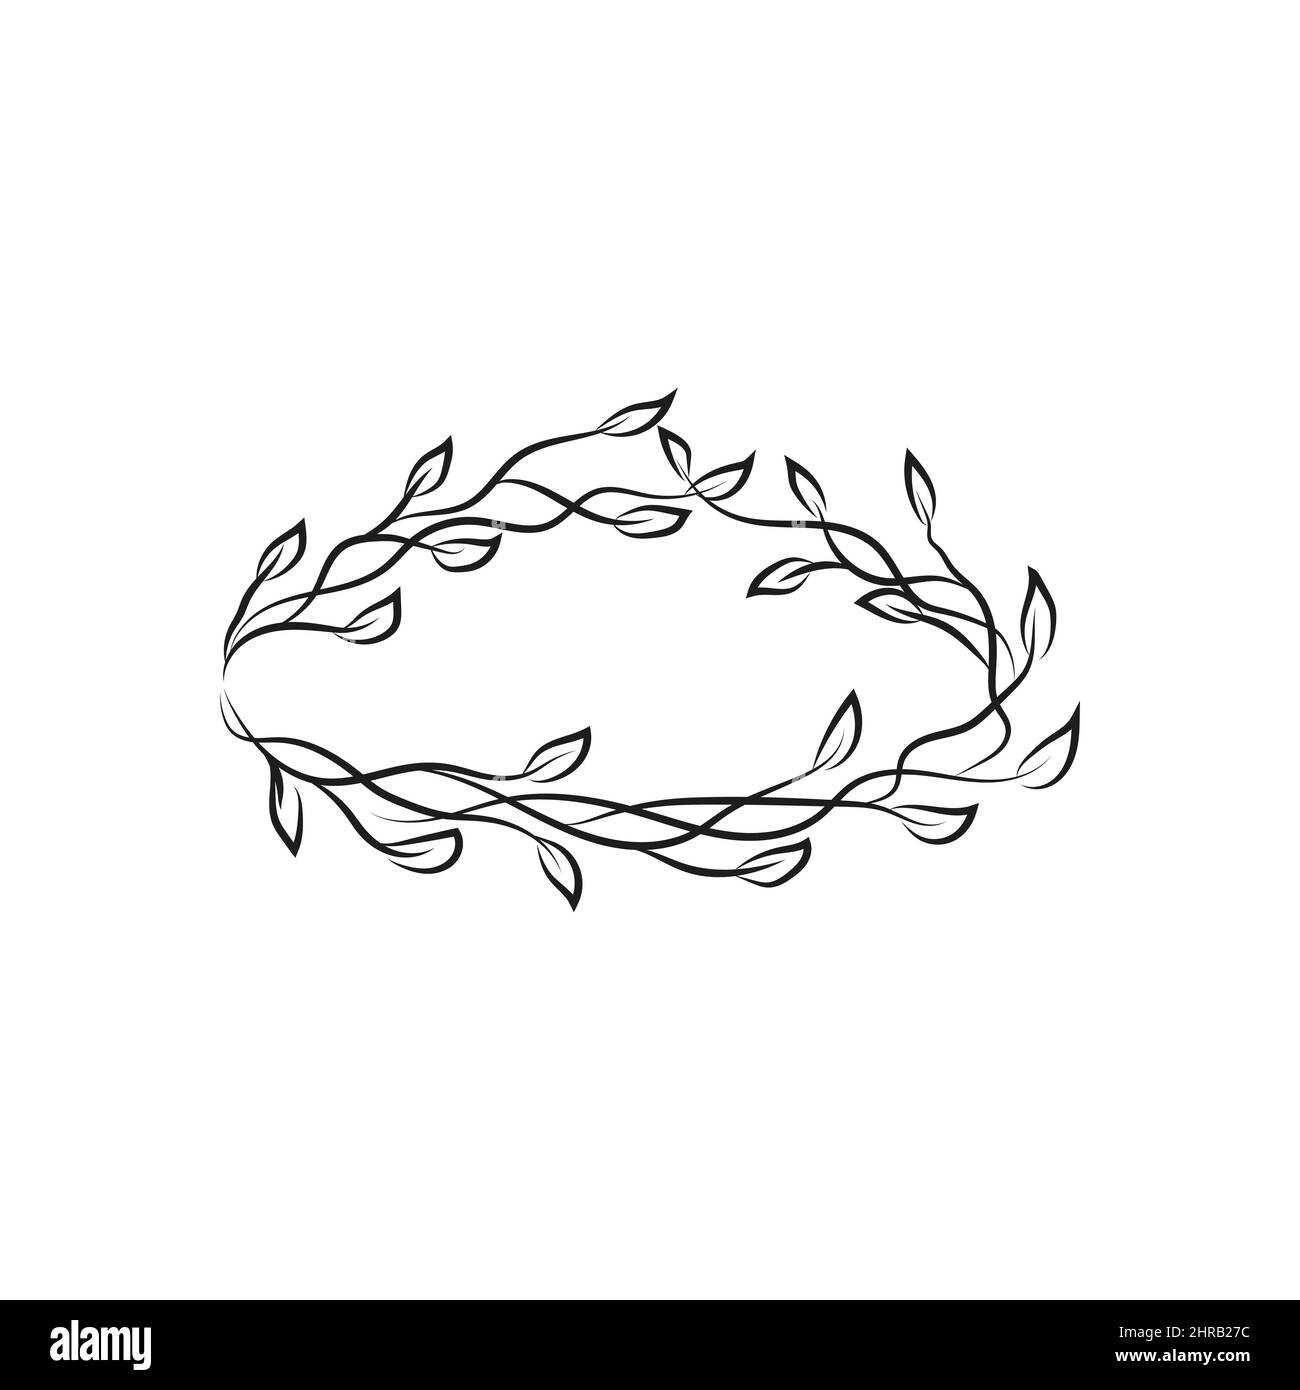 Eleganter rustikaler Rahmen für sommerliches Design. Doodle handgezeichneten dekorativen Kranz mit Zweig, Kraut, Pflanze, verlassen und Blume, floral.Vector isoliertes Design Stock Vektor